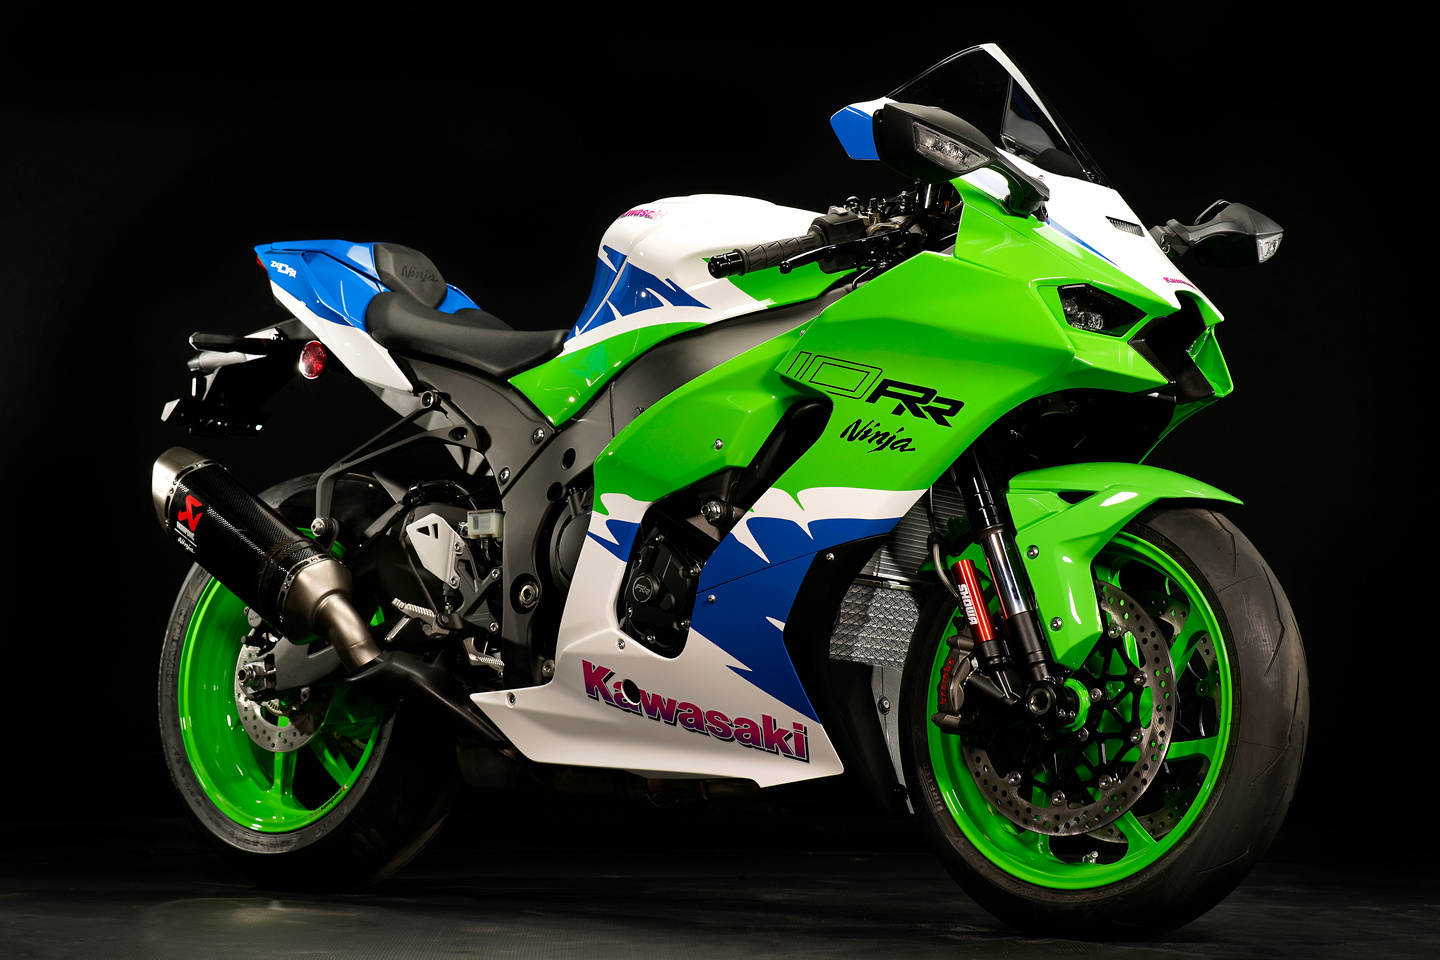 Nowa kombinacja kolorów Kawasaki Anniversary dla limitowanej produkcji